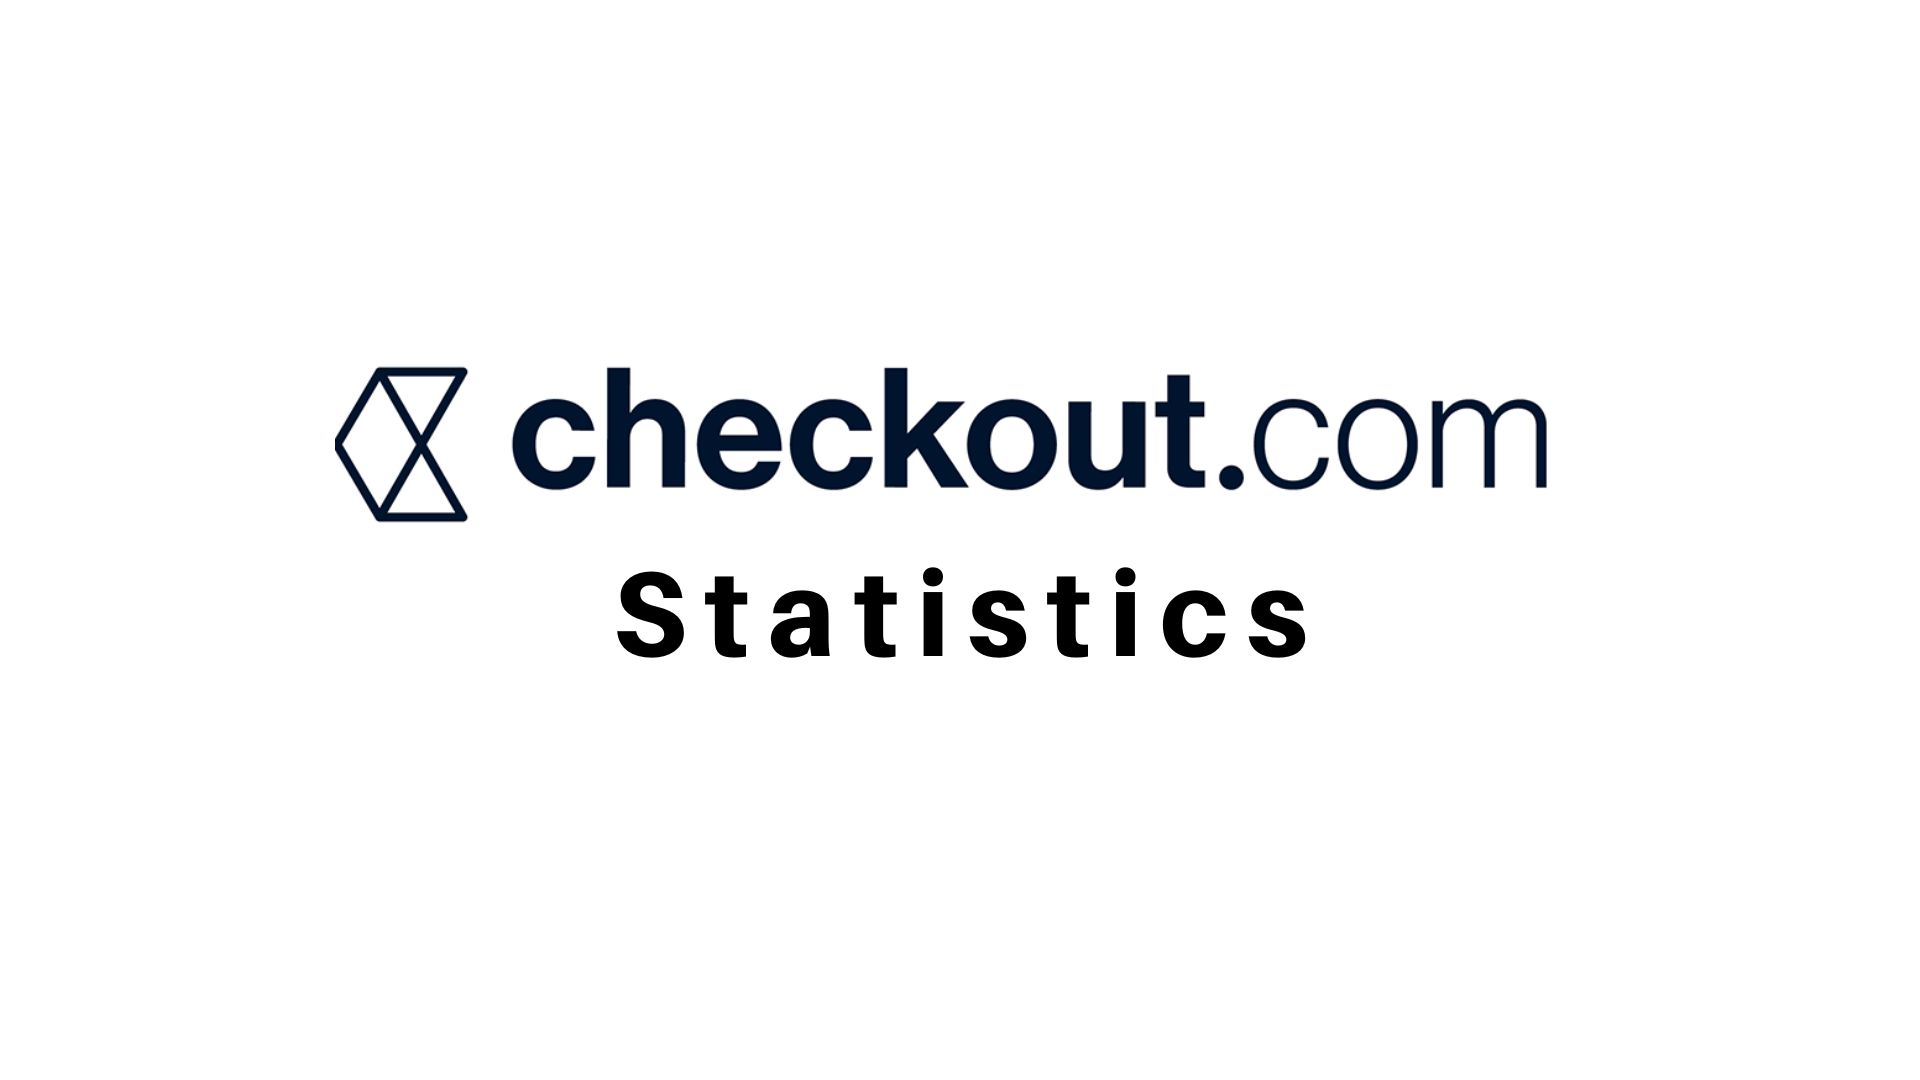 Checkout.com Statistics